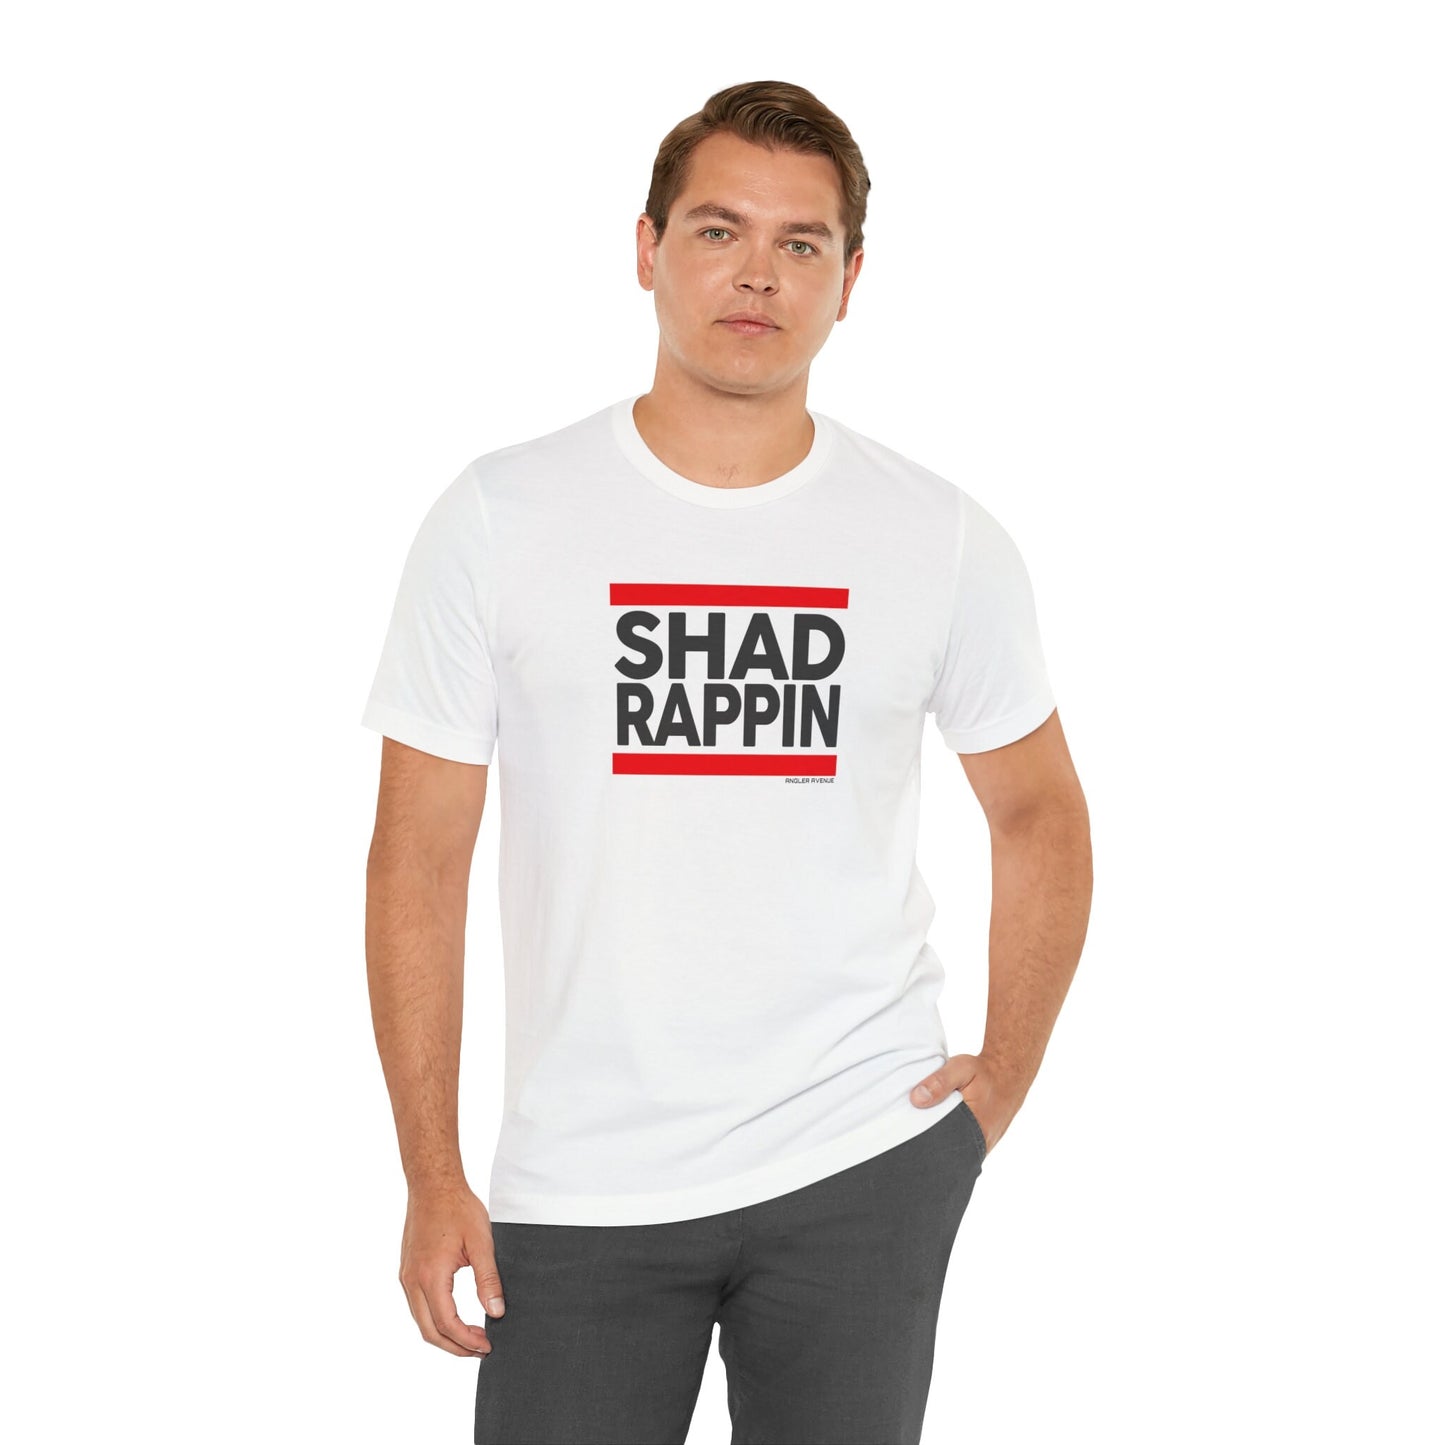 Shad Rappin T-Shirt